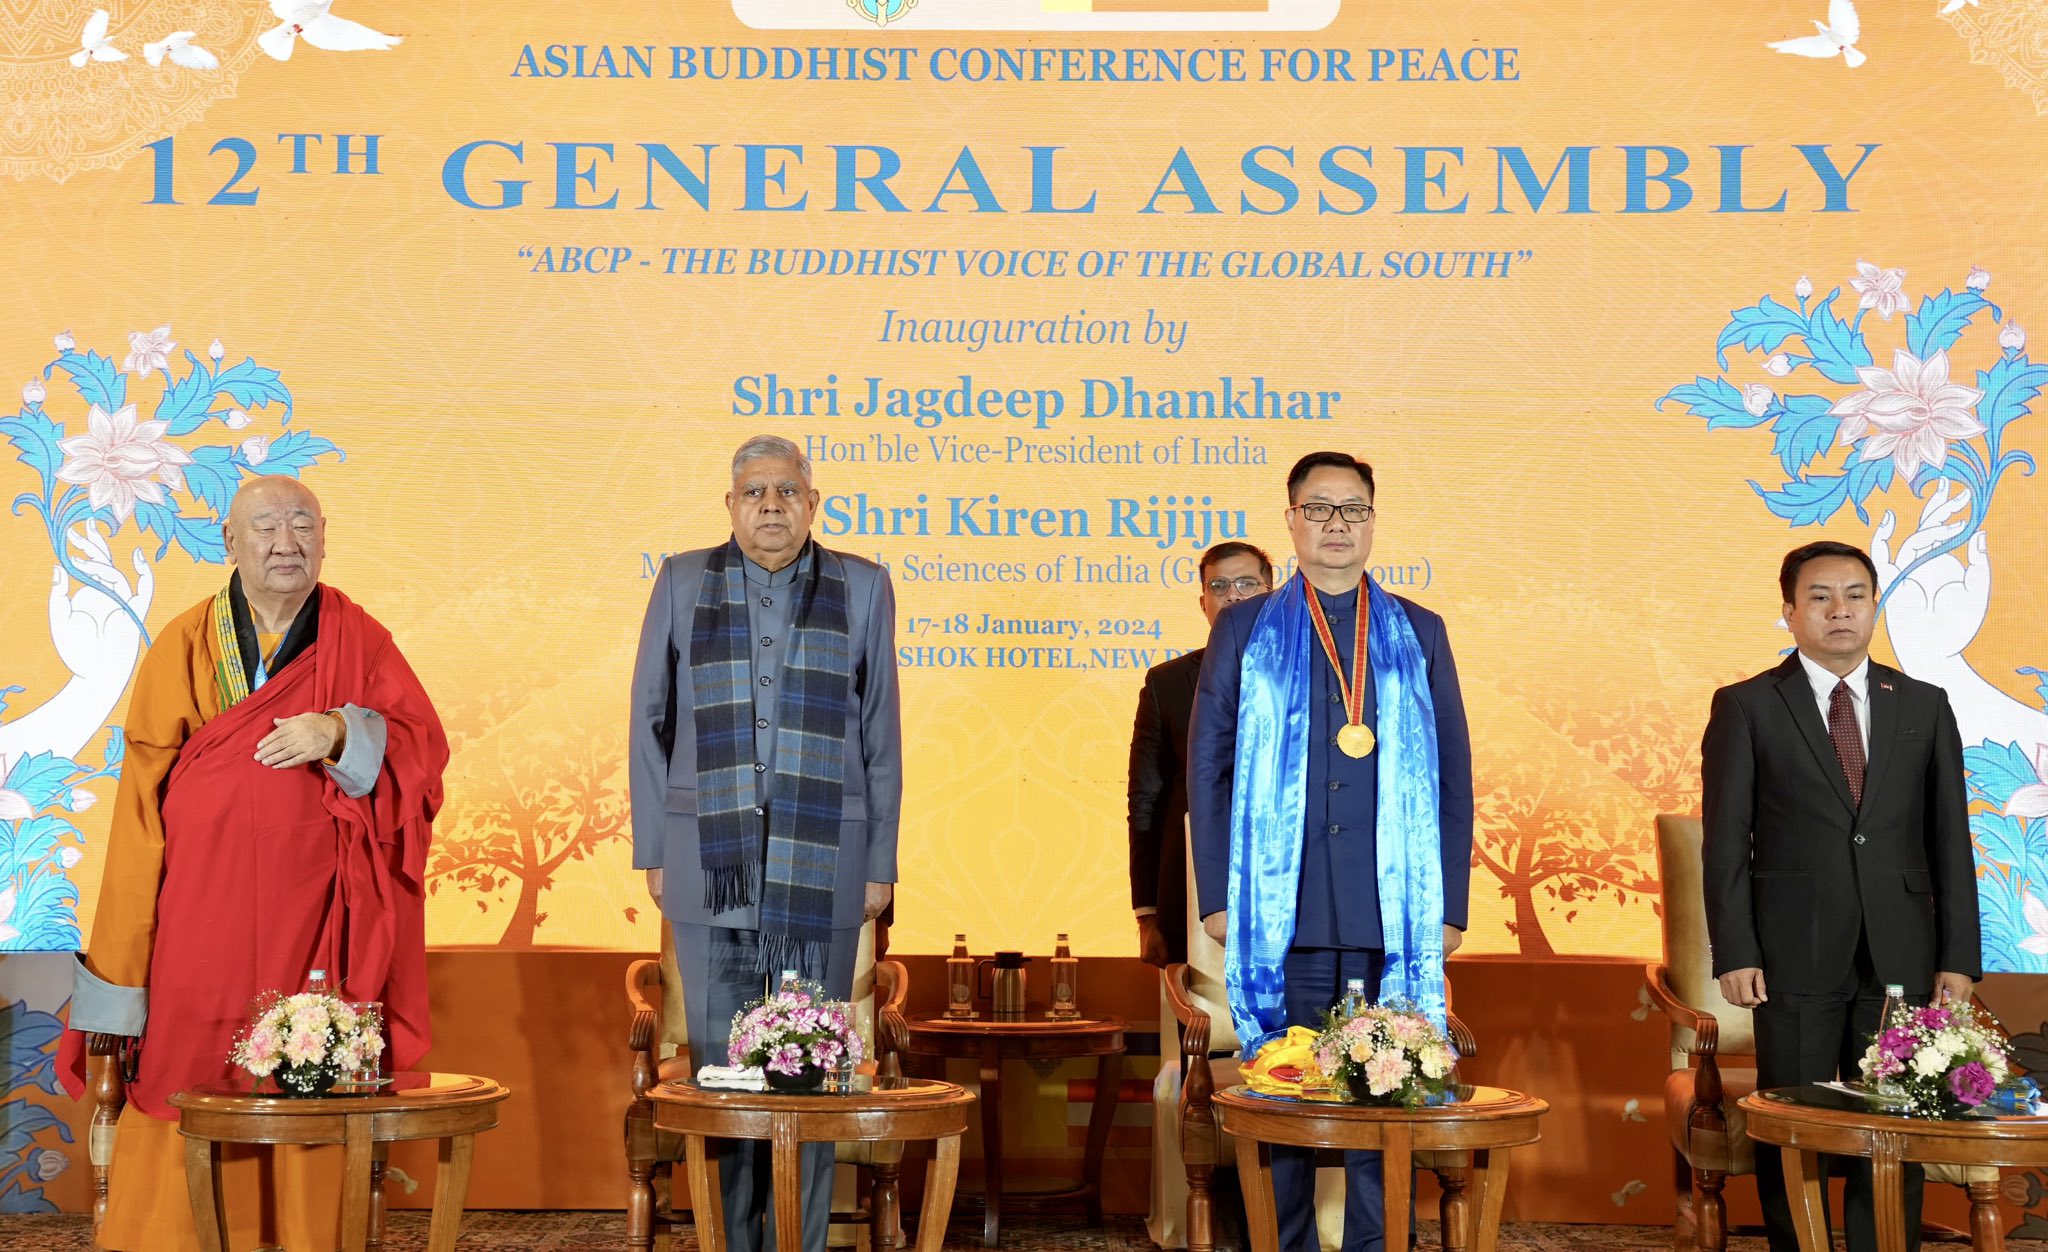 17 जनवरी 2024 को नई दिल्ली में एशियन बुद्धिस्ट काँफ्रेंस फॉर पीस की 12वीं आम सभा (एबीसीपी) के दौरान उपराष्ट्रपति श्री जगदीप धनखड़।